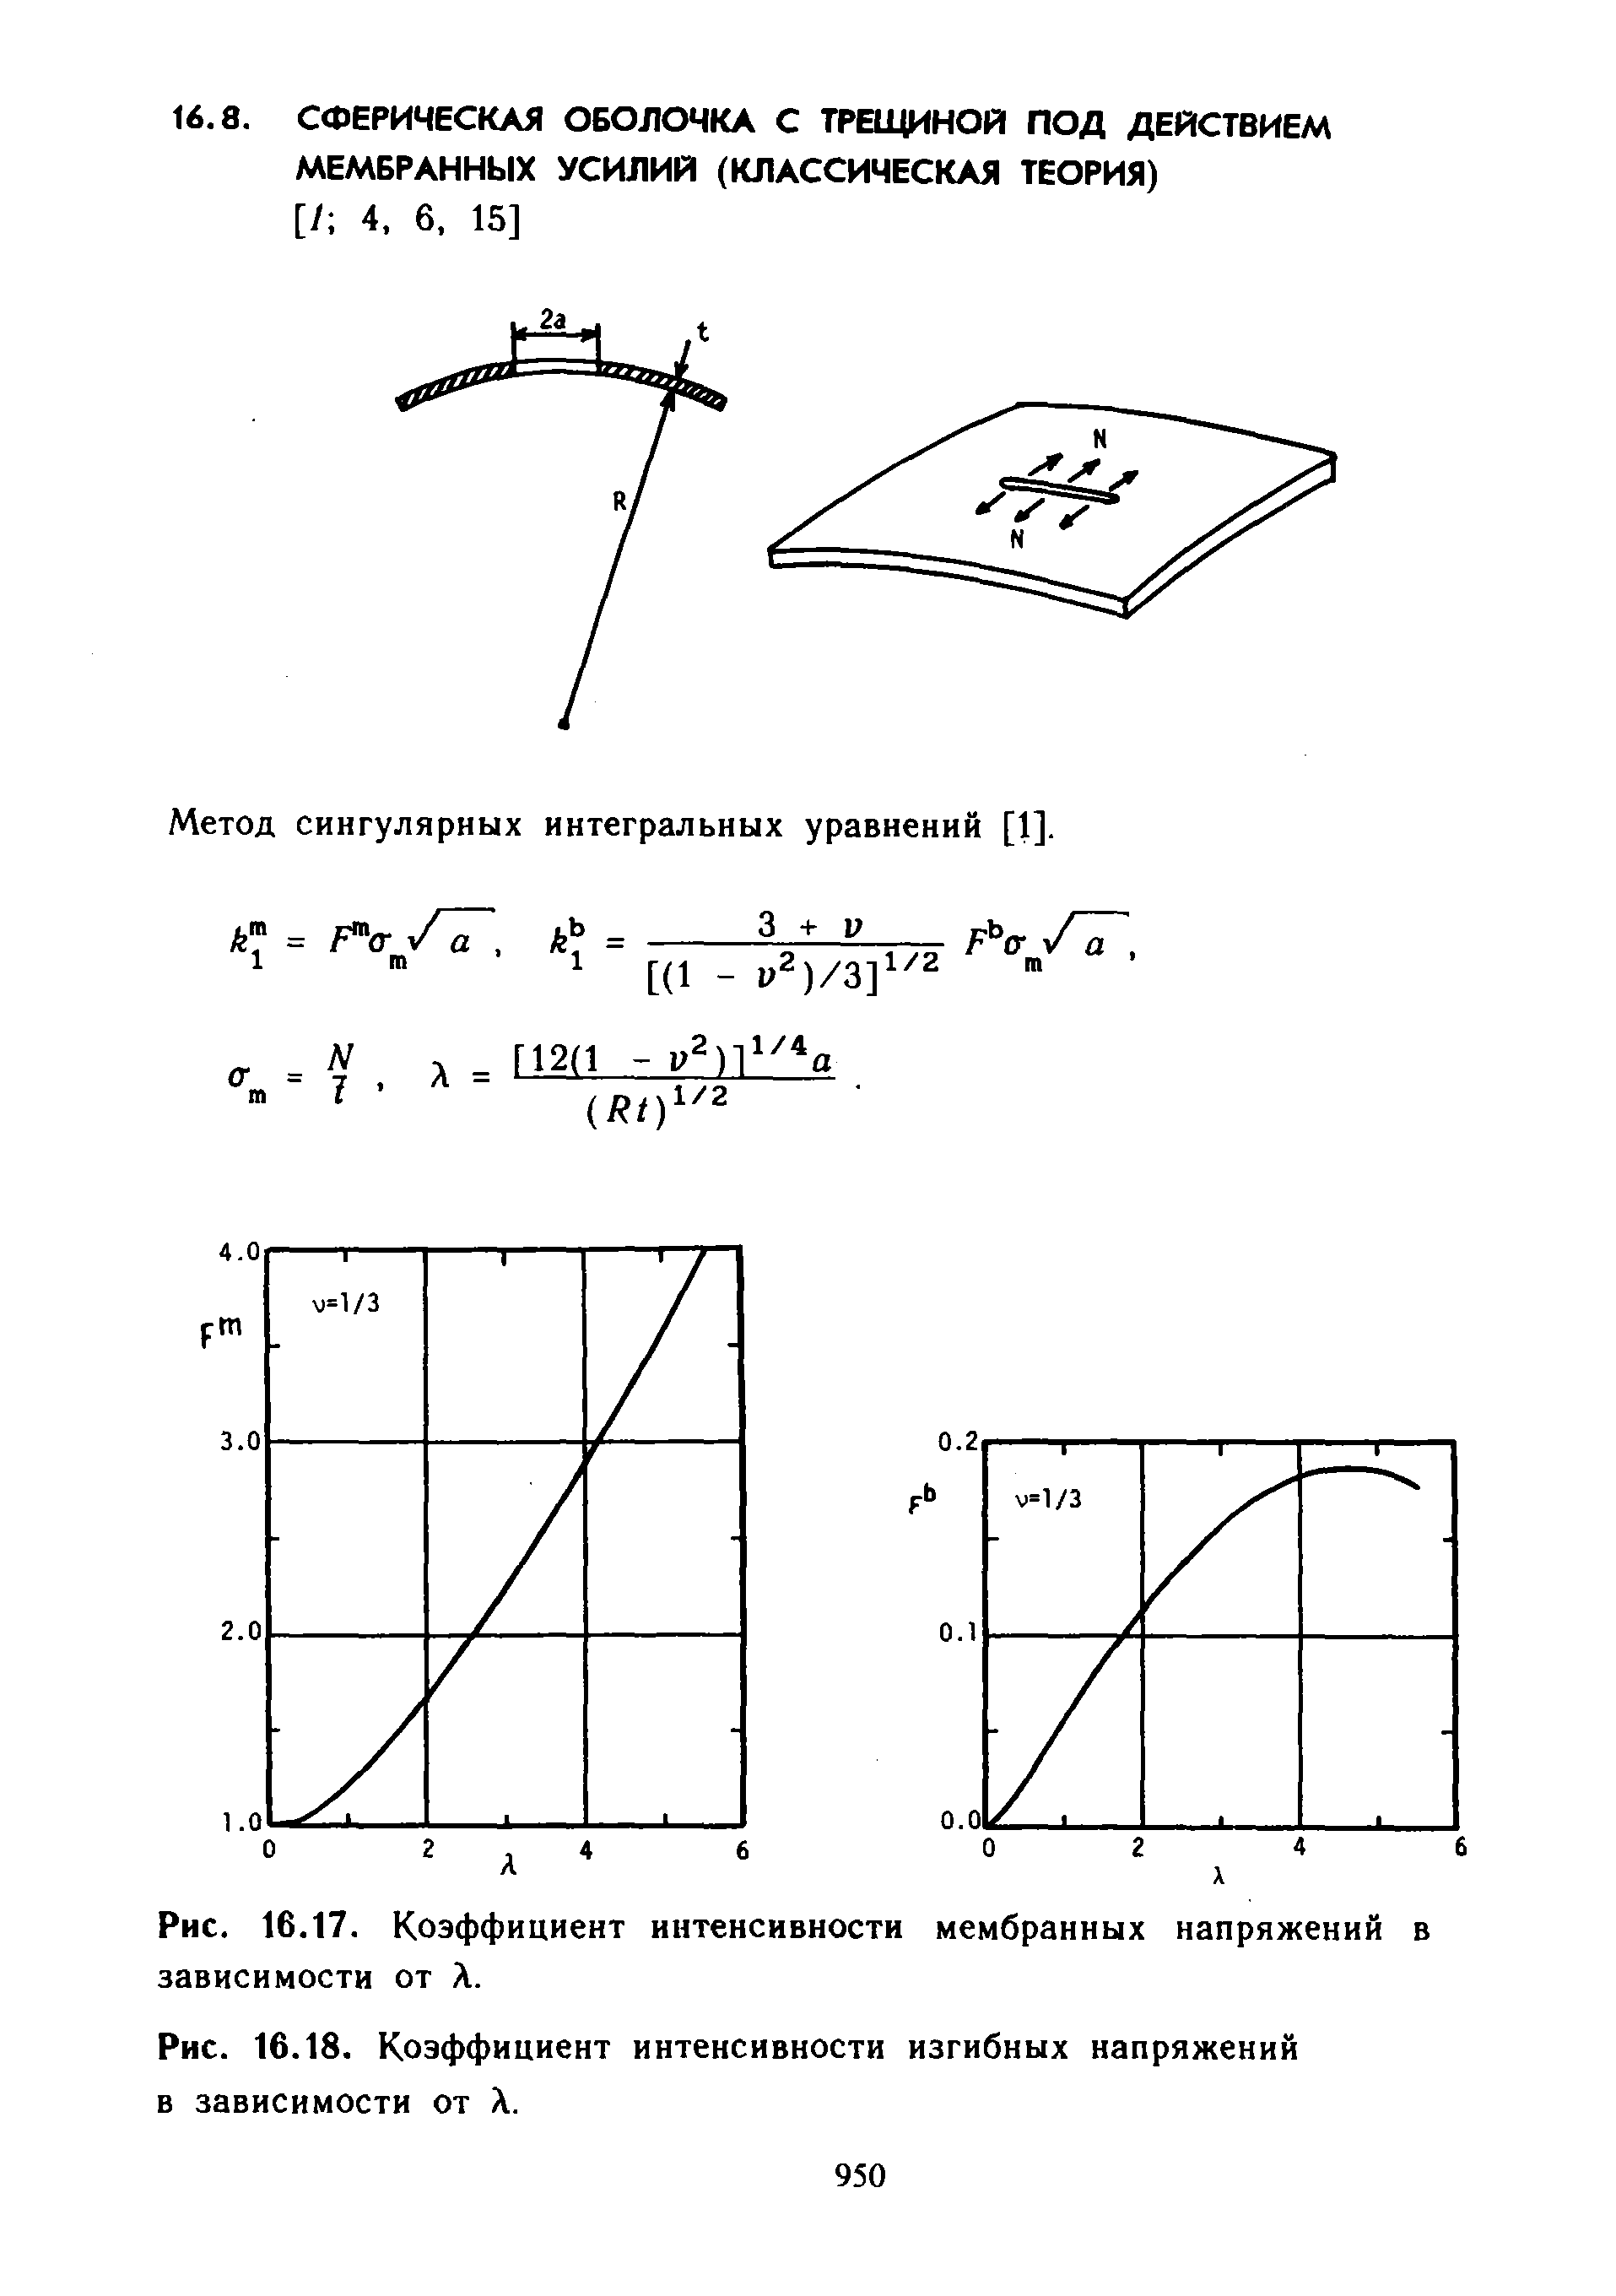 Метод сингулярных интегральных уравнений [1].
